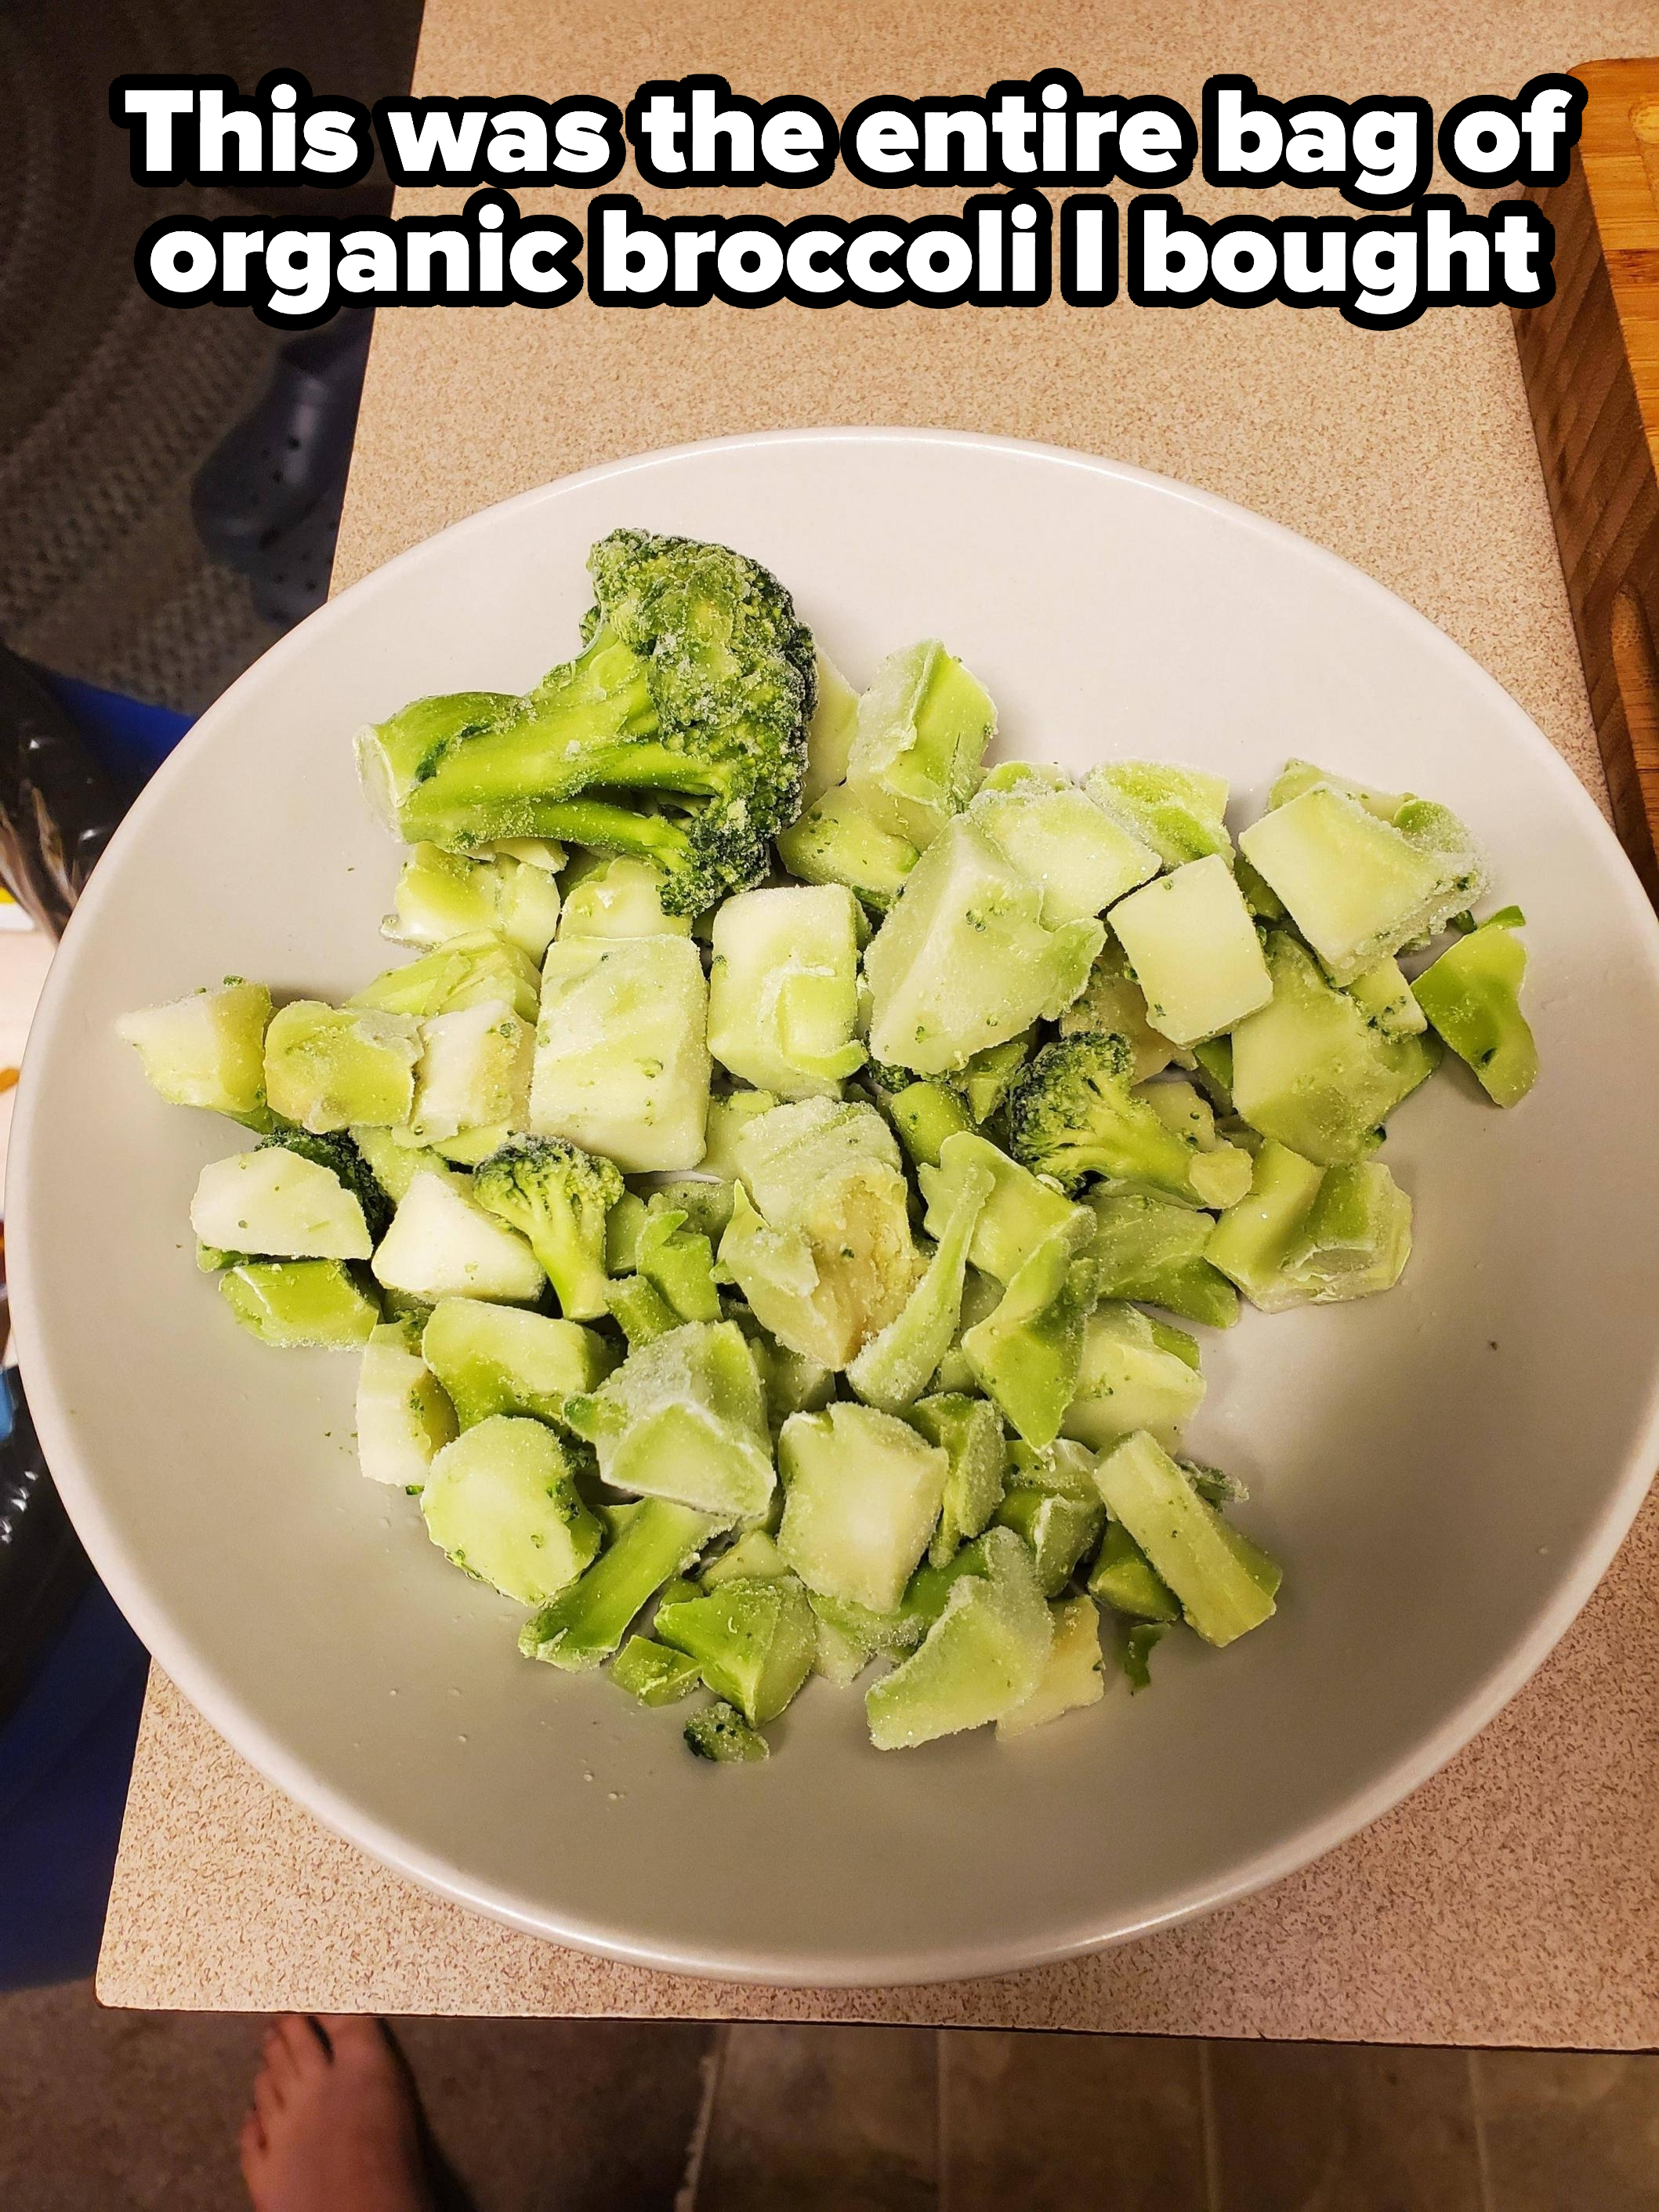 Broccoli stems